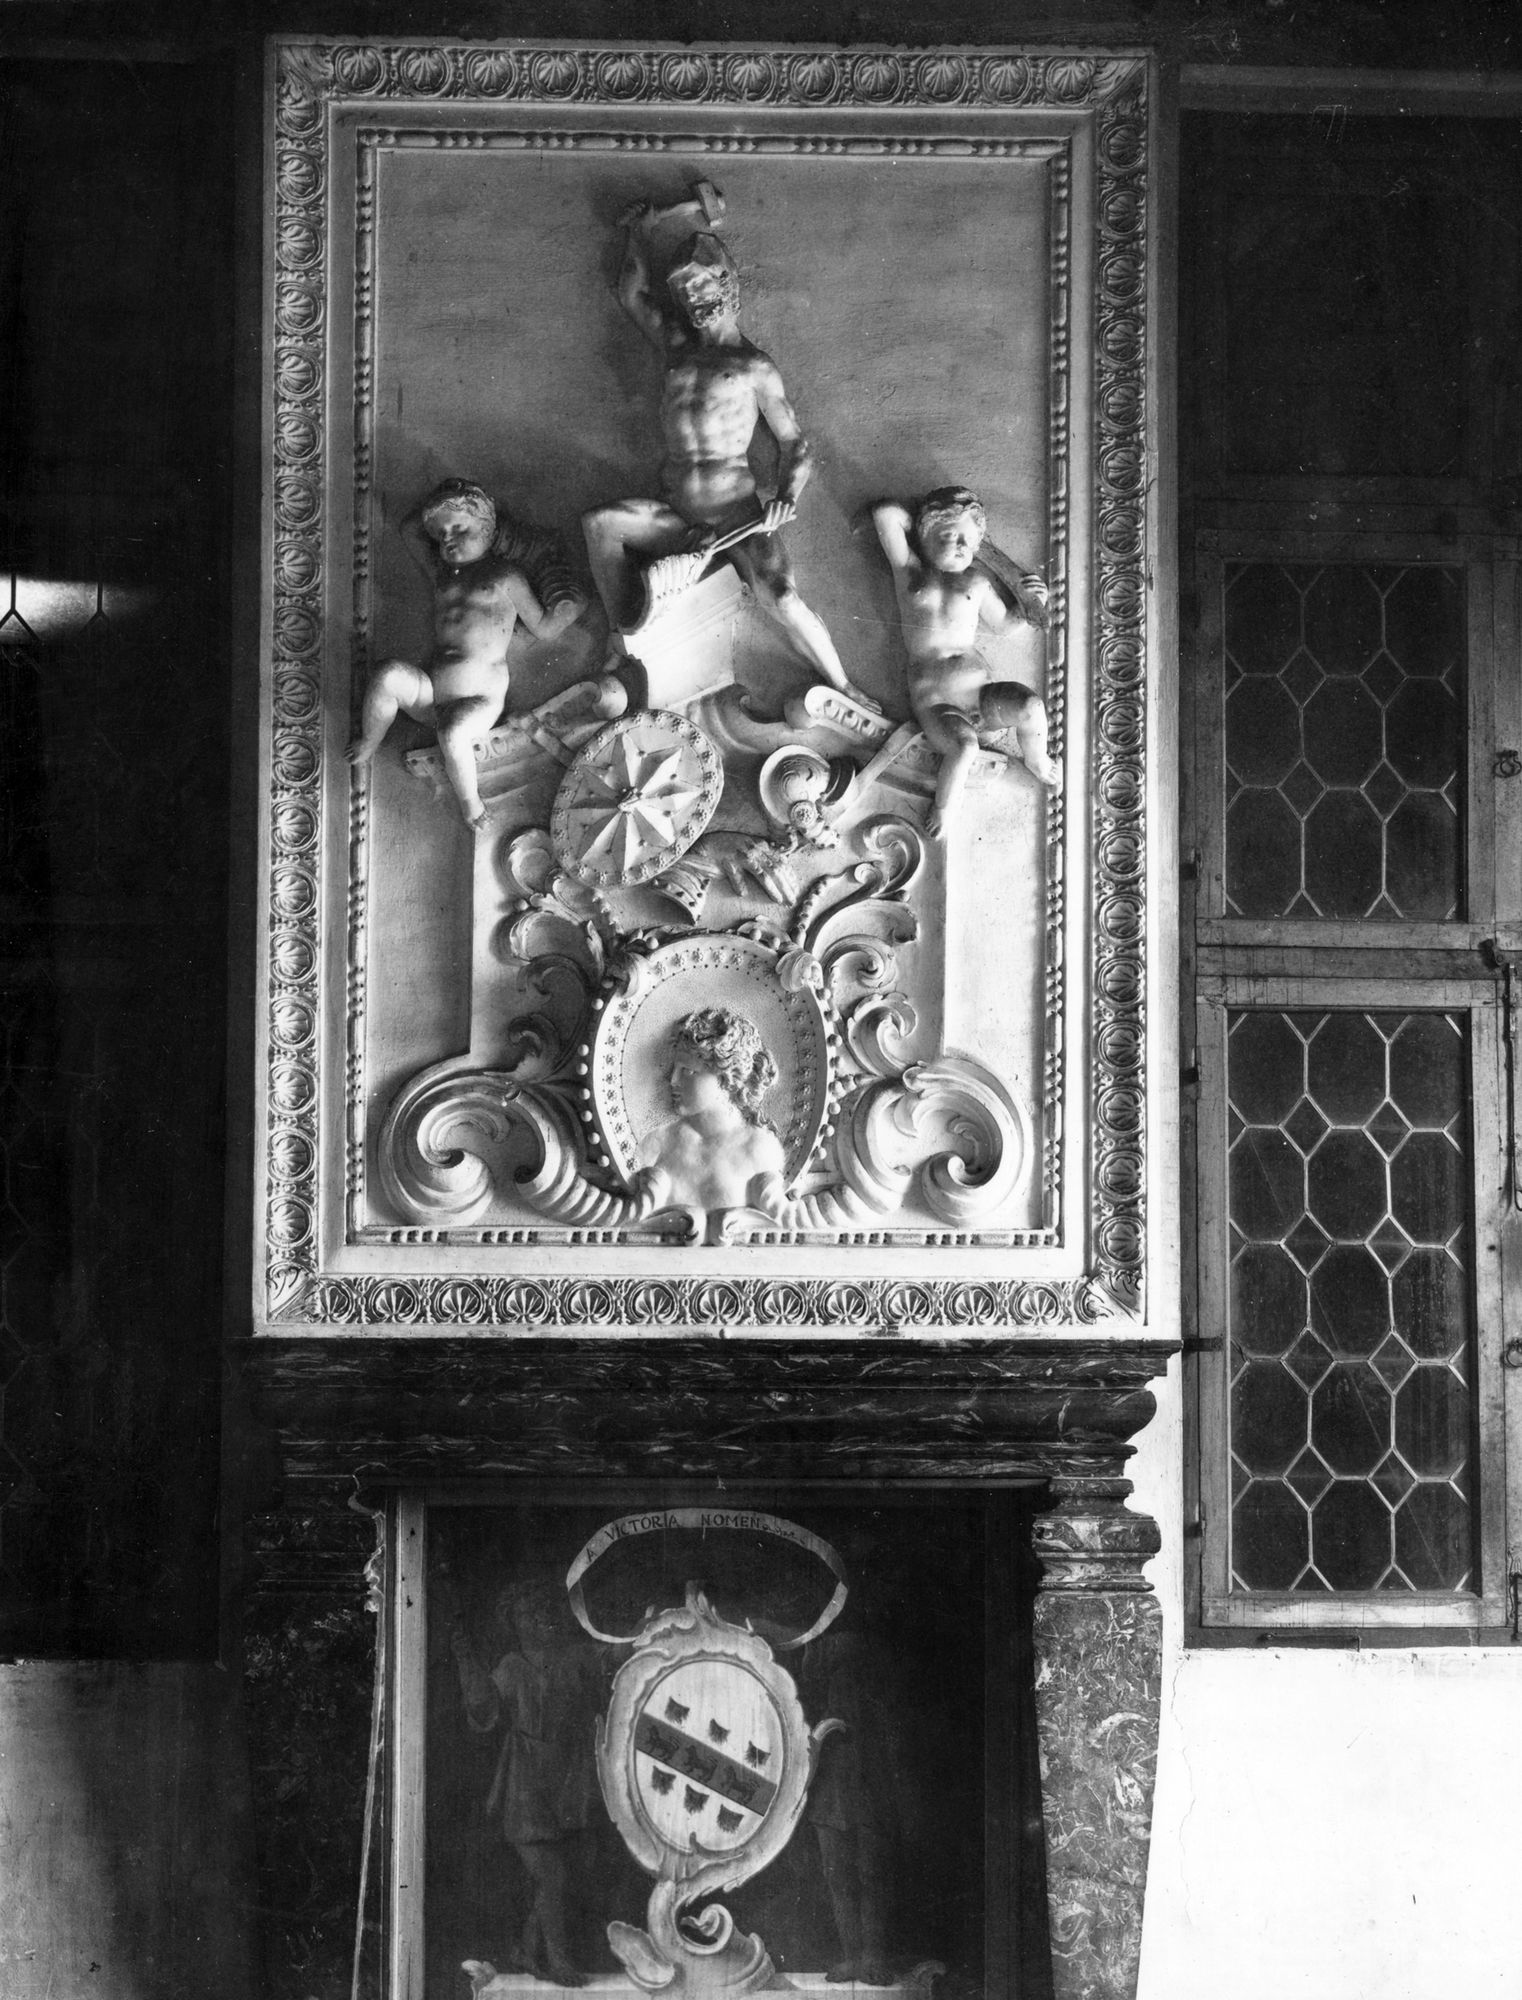 Pontecasale. Villa Garzoni ora Co. Luigi Donà dalle Rose. Formella in gesso sopra piccolo camino, stile barocco (negativo) di Gabinetto fotografico (XX)